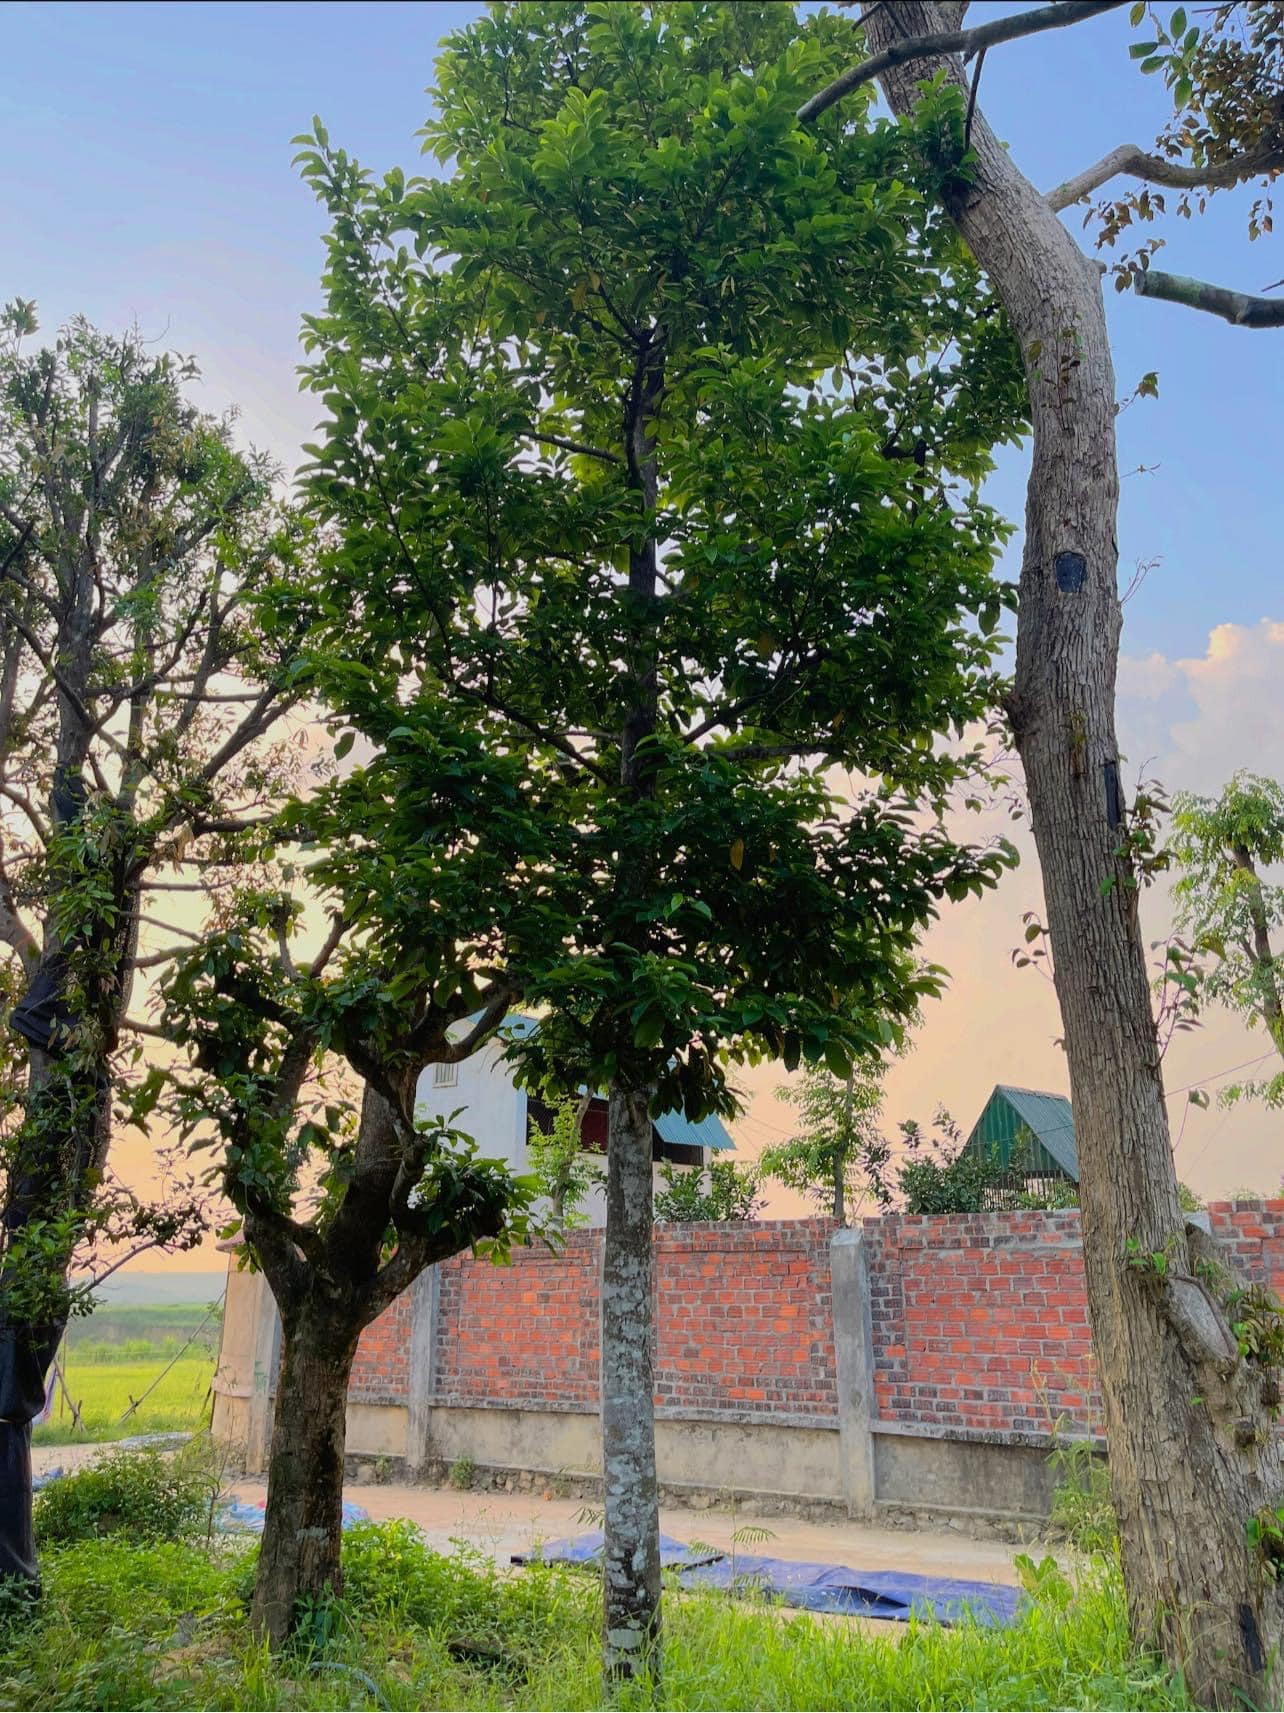 CÂY CHAY Bán cây chay- hướng dẫn trồng và chăm sóc cây chay Đà Nẵng